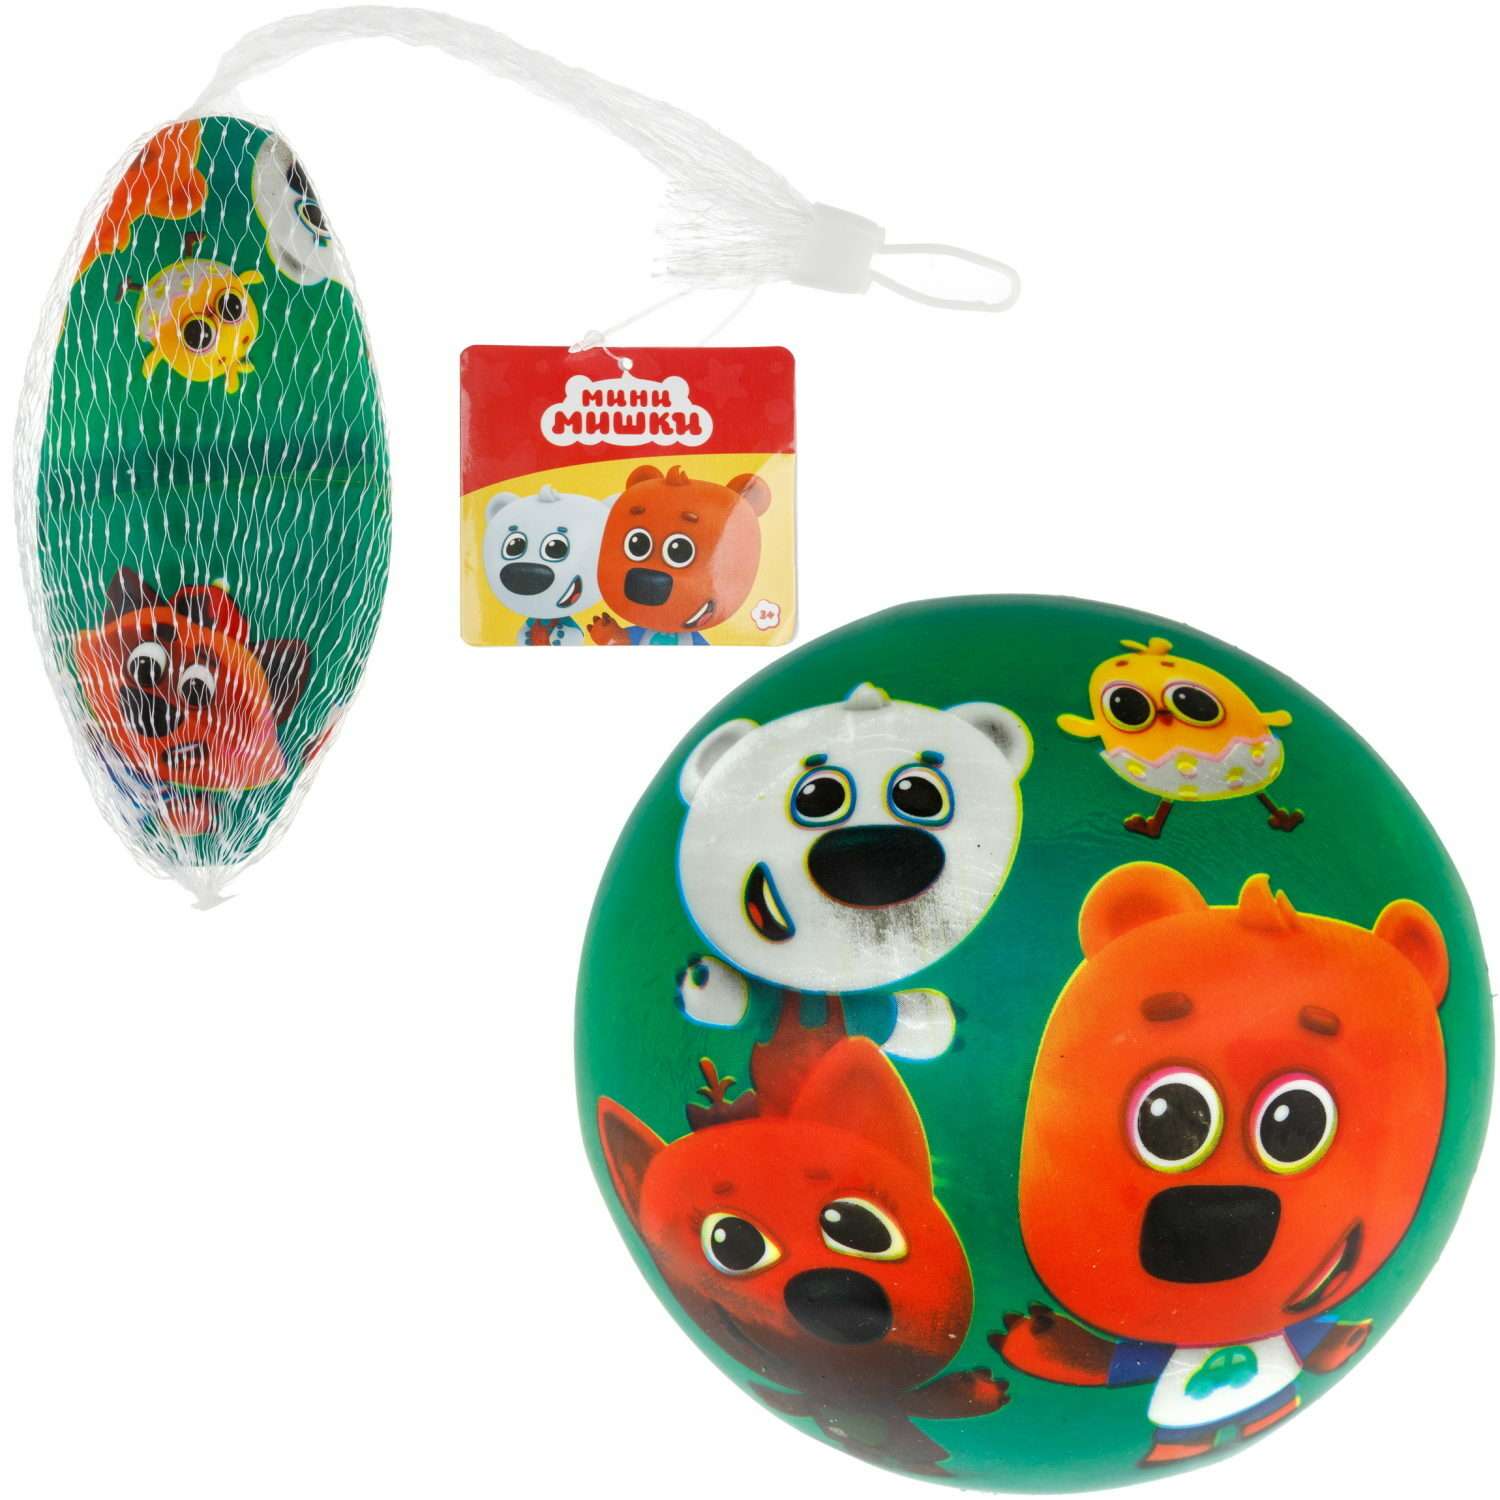 Мяч детский 15 см 1TOY Ми-Ми-Мишки Мини-мишки резиновый надувной для ребенка игрушки для улицы зеленый - фото 4